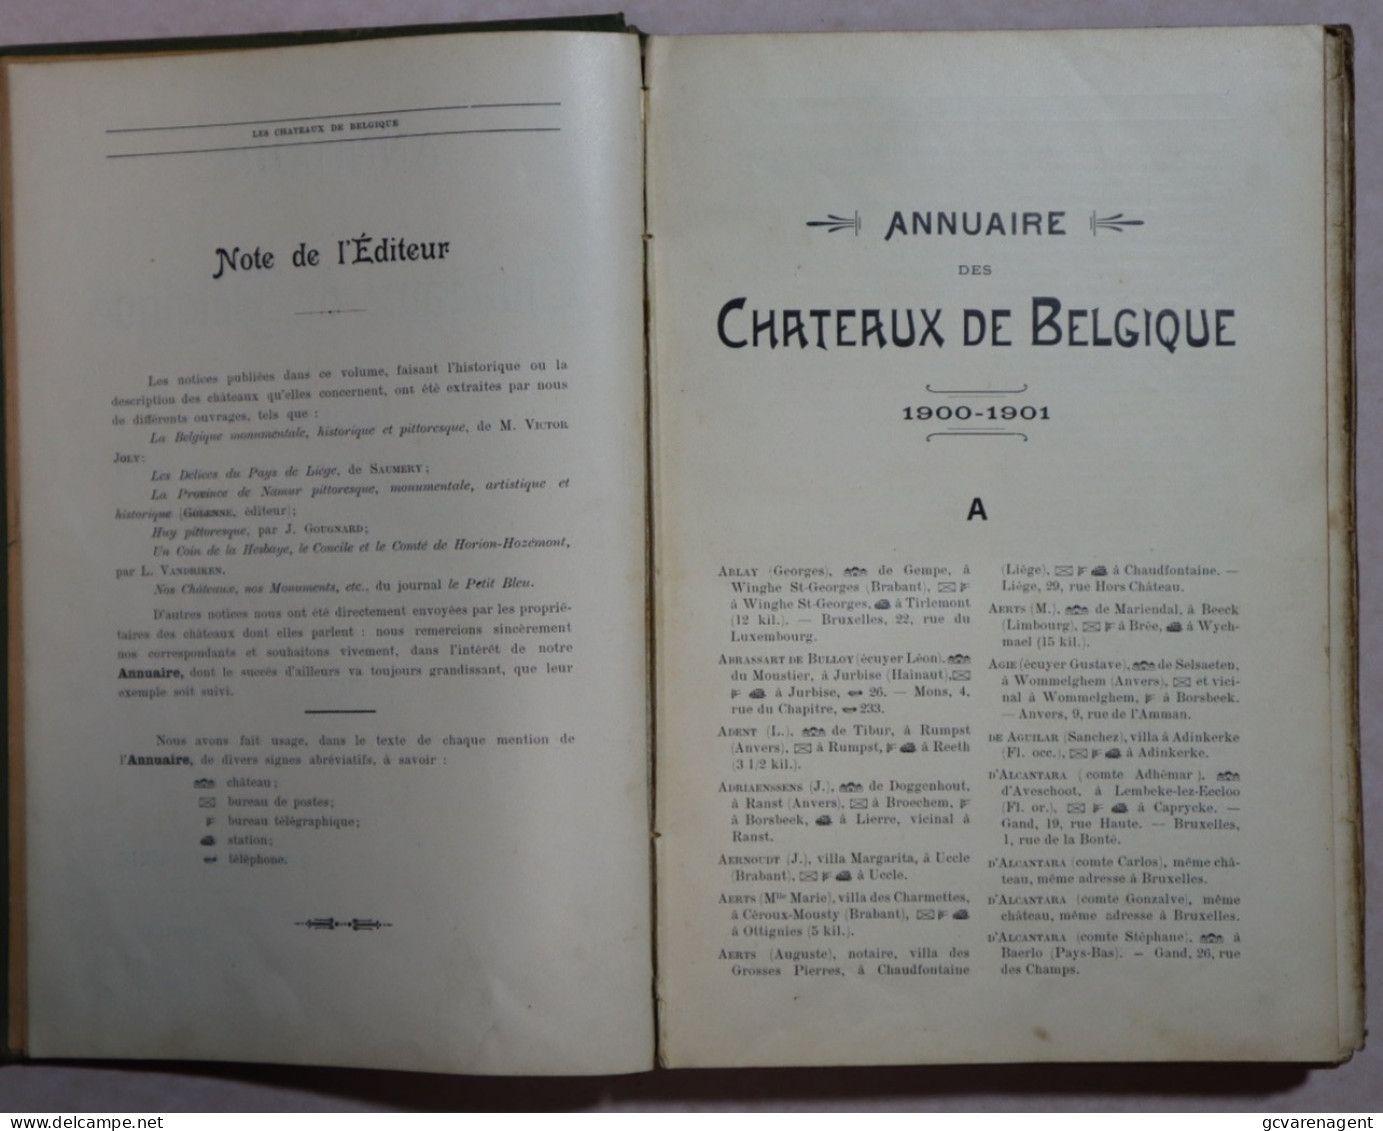 ANNUAIRE DES CHATEAUX DE BELGIQUE 1900 - 1901 / ZELDZAAM BOEK 187 BLZ + 56 BLZ A + MEERDERE RECLAME  ZIE BESCHRIJF - Belgien